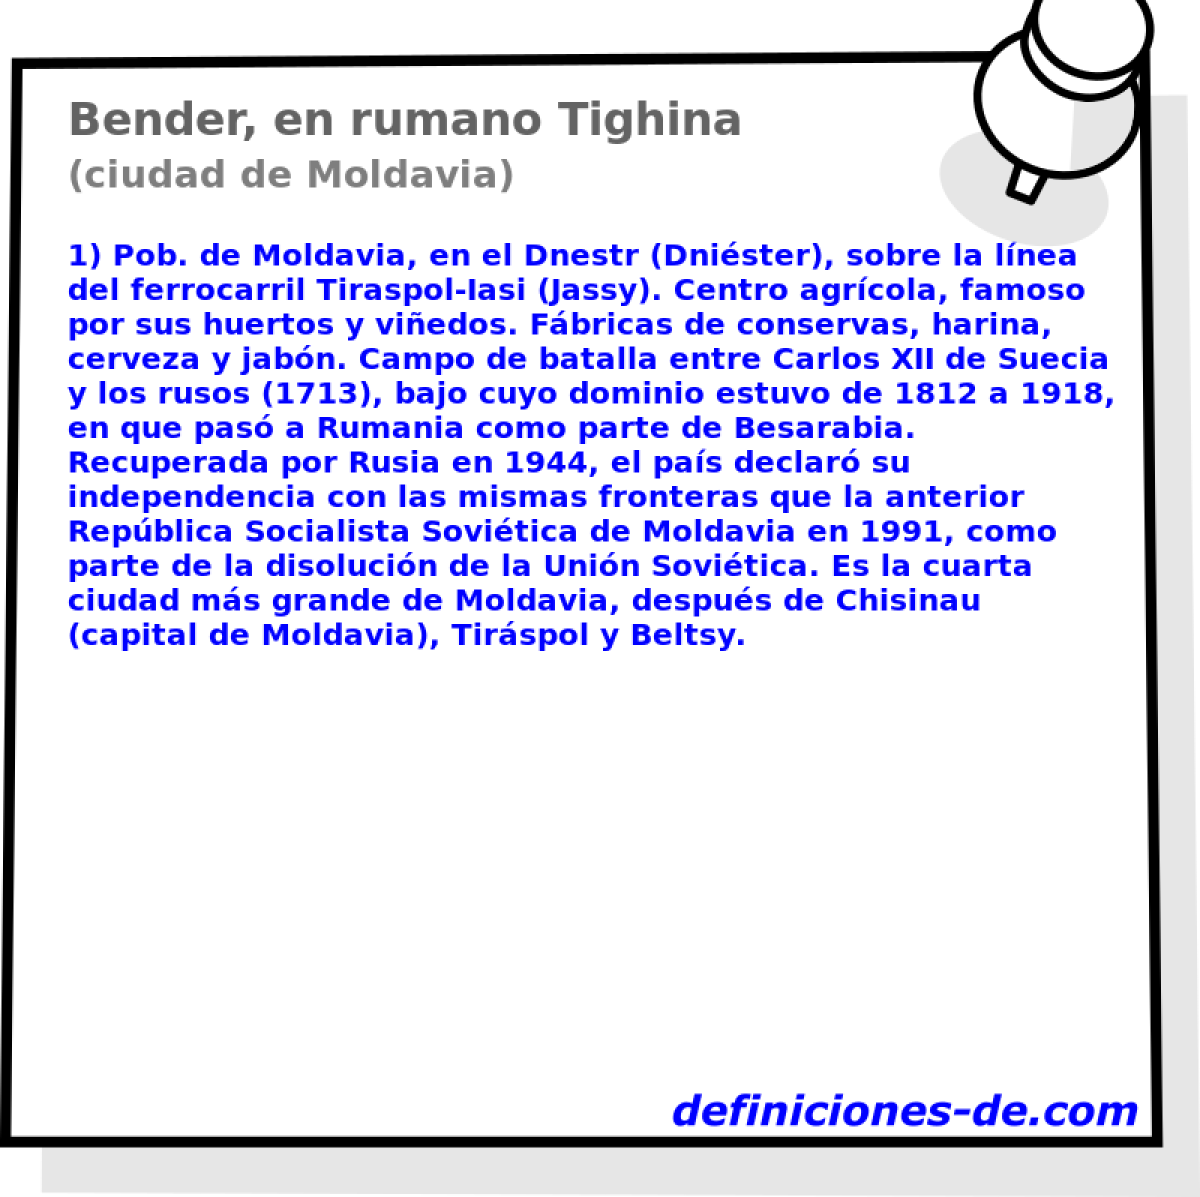 Bender, en rumano Tighina (ciudad de Moldavia)